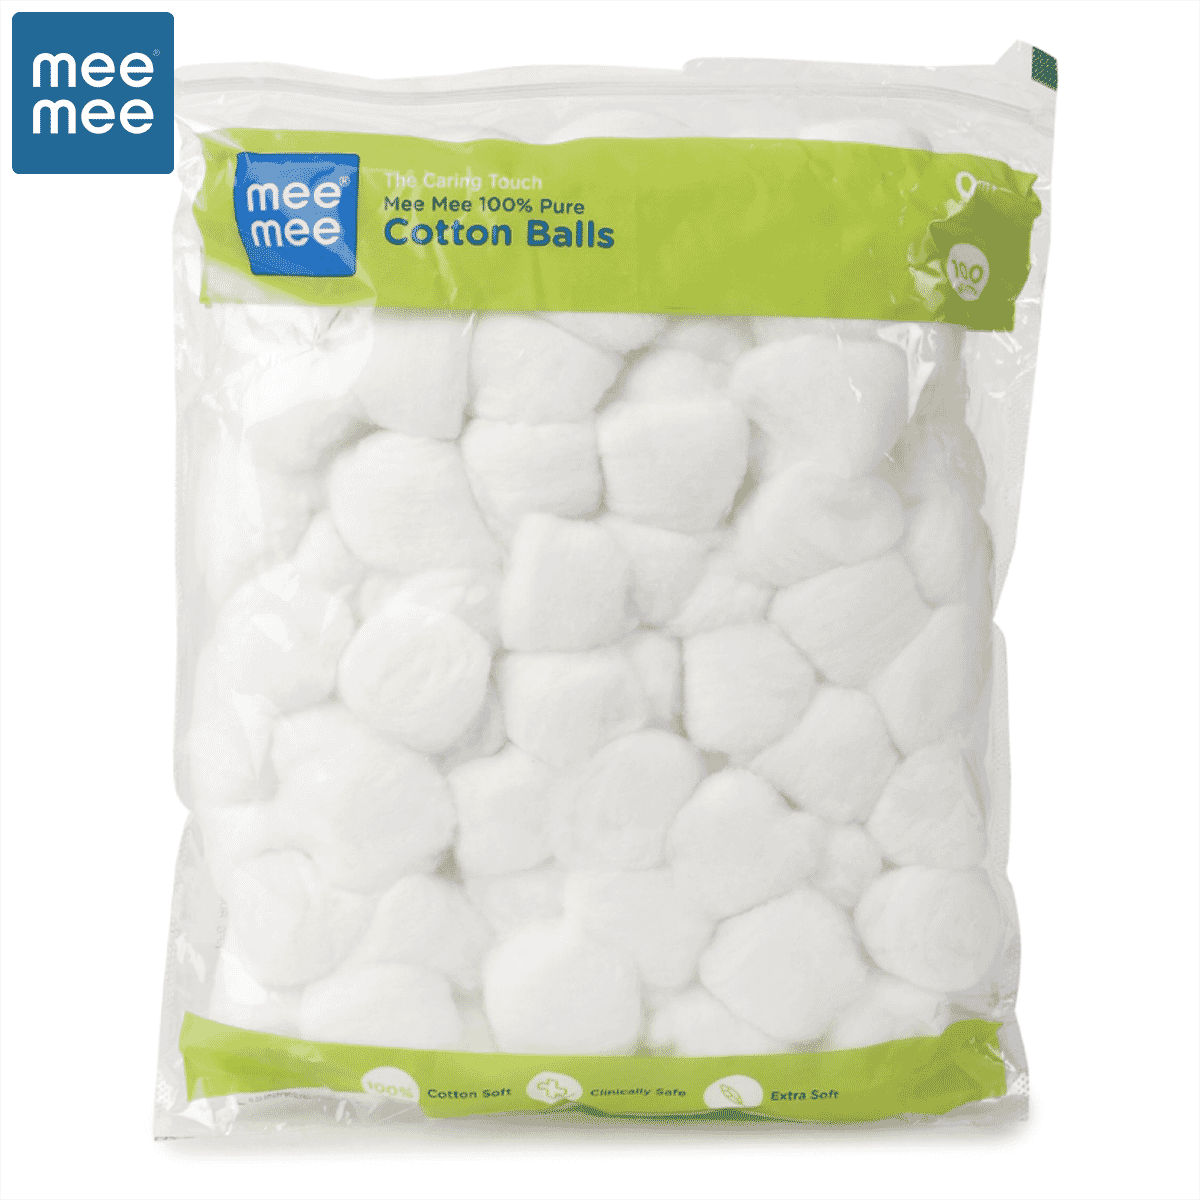 Mee mee cotton balls [mm-1440 a]